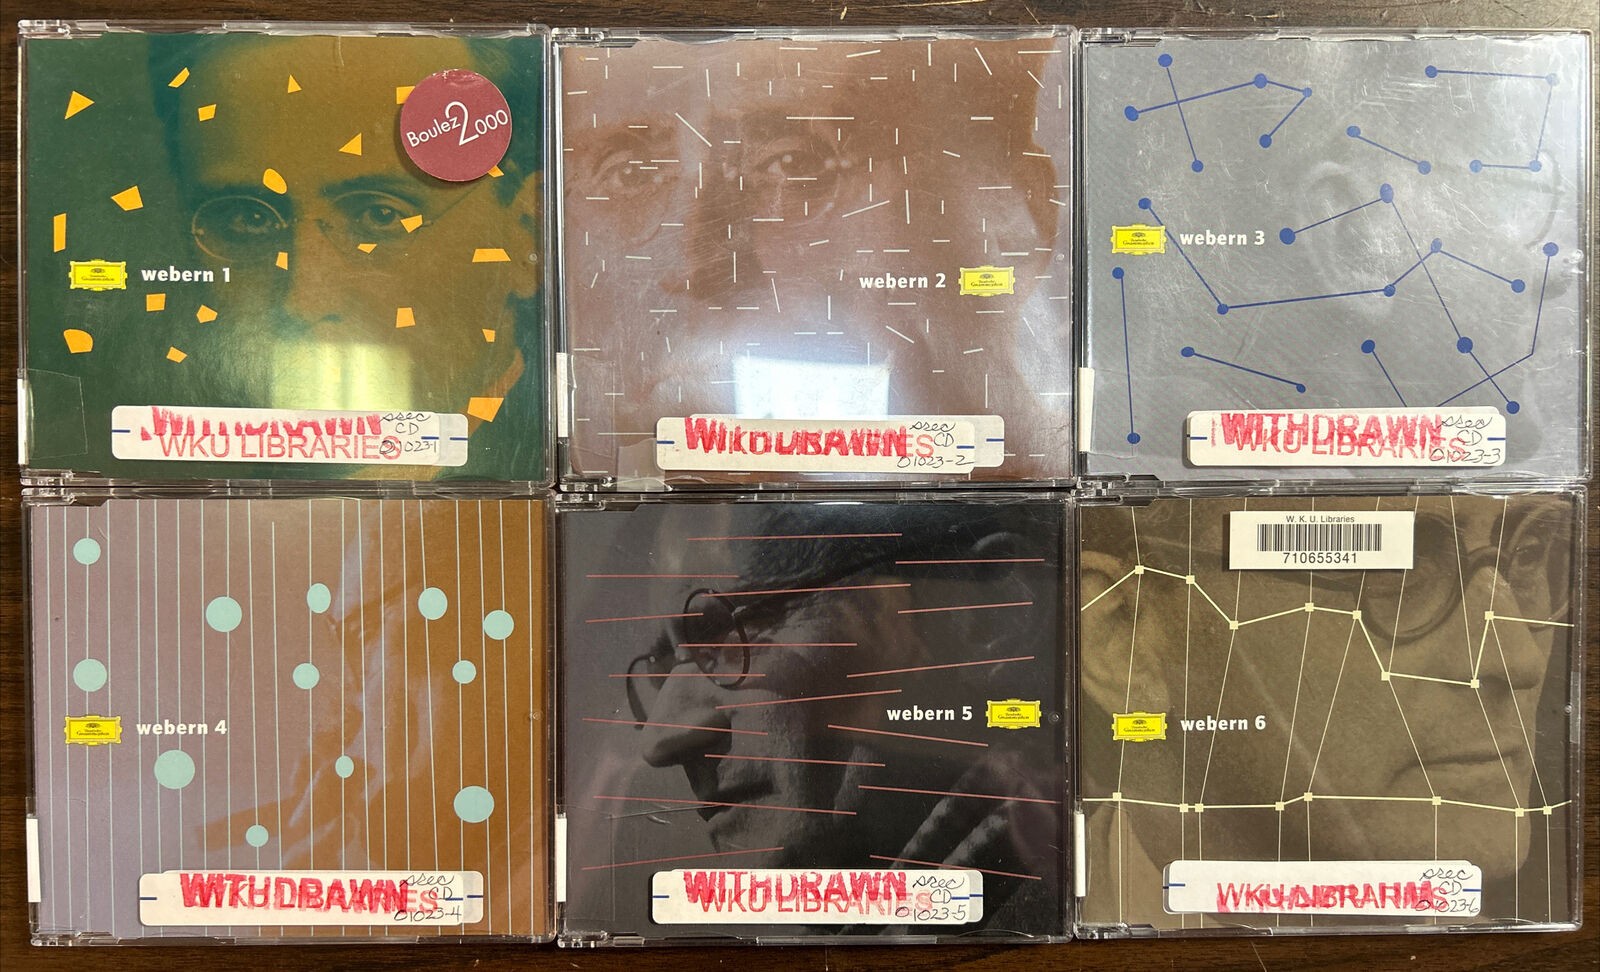 Anton Webern - Complete Works, second Pierre Boulez cycle 1995-2000, DG 6 CD set